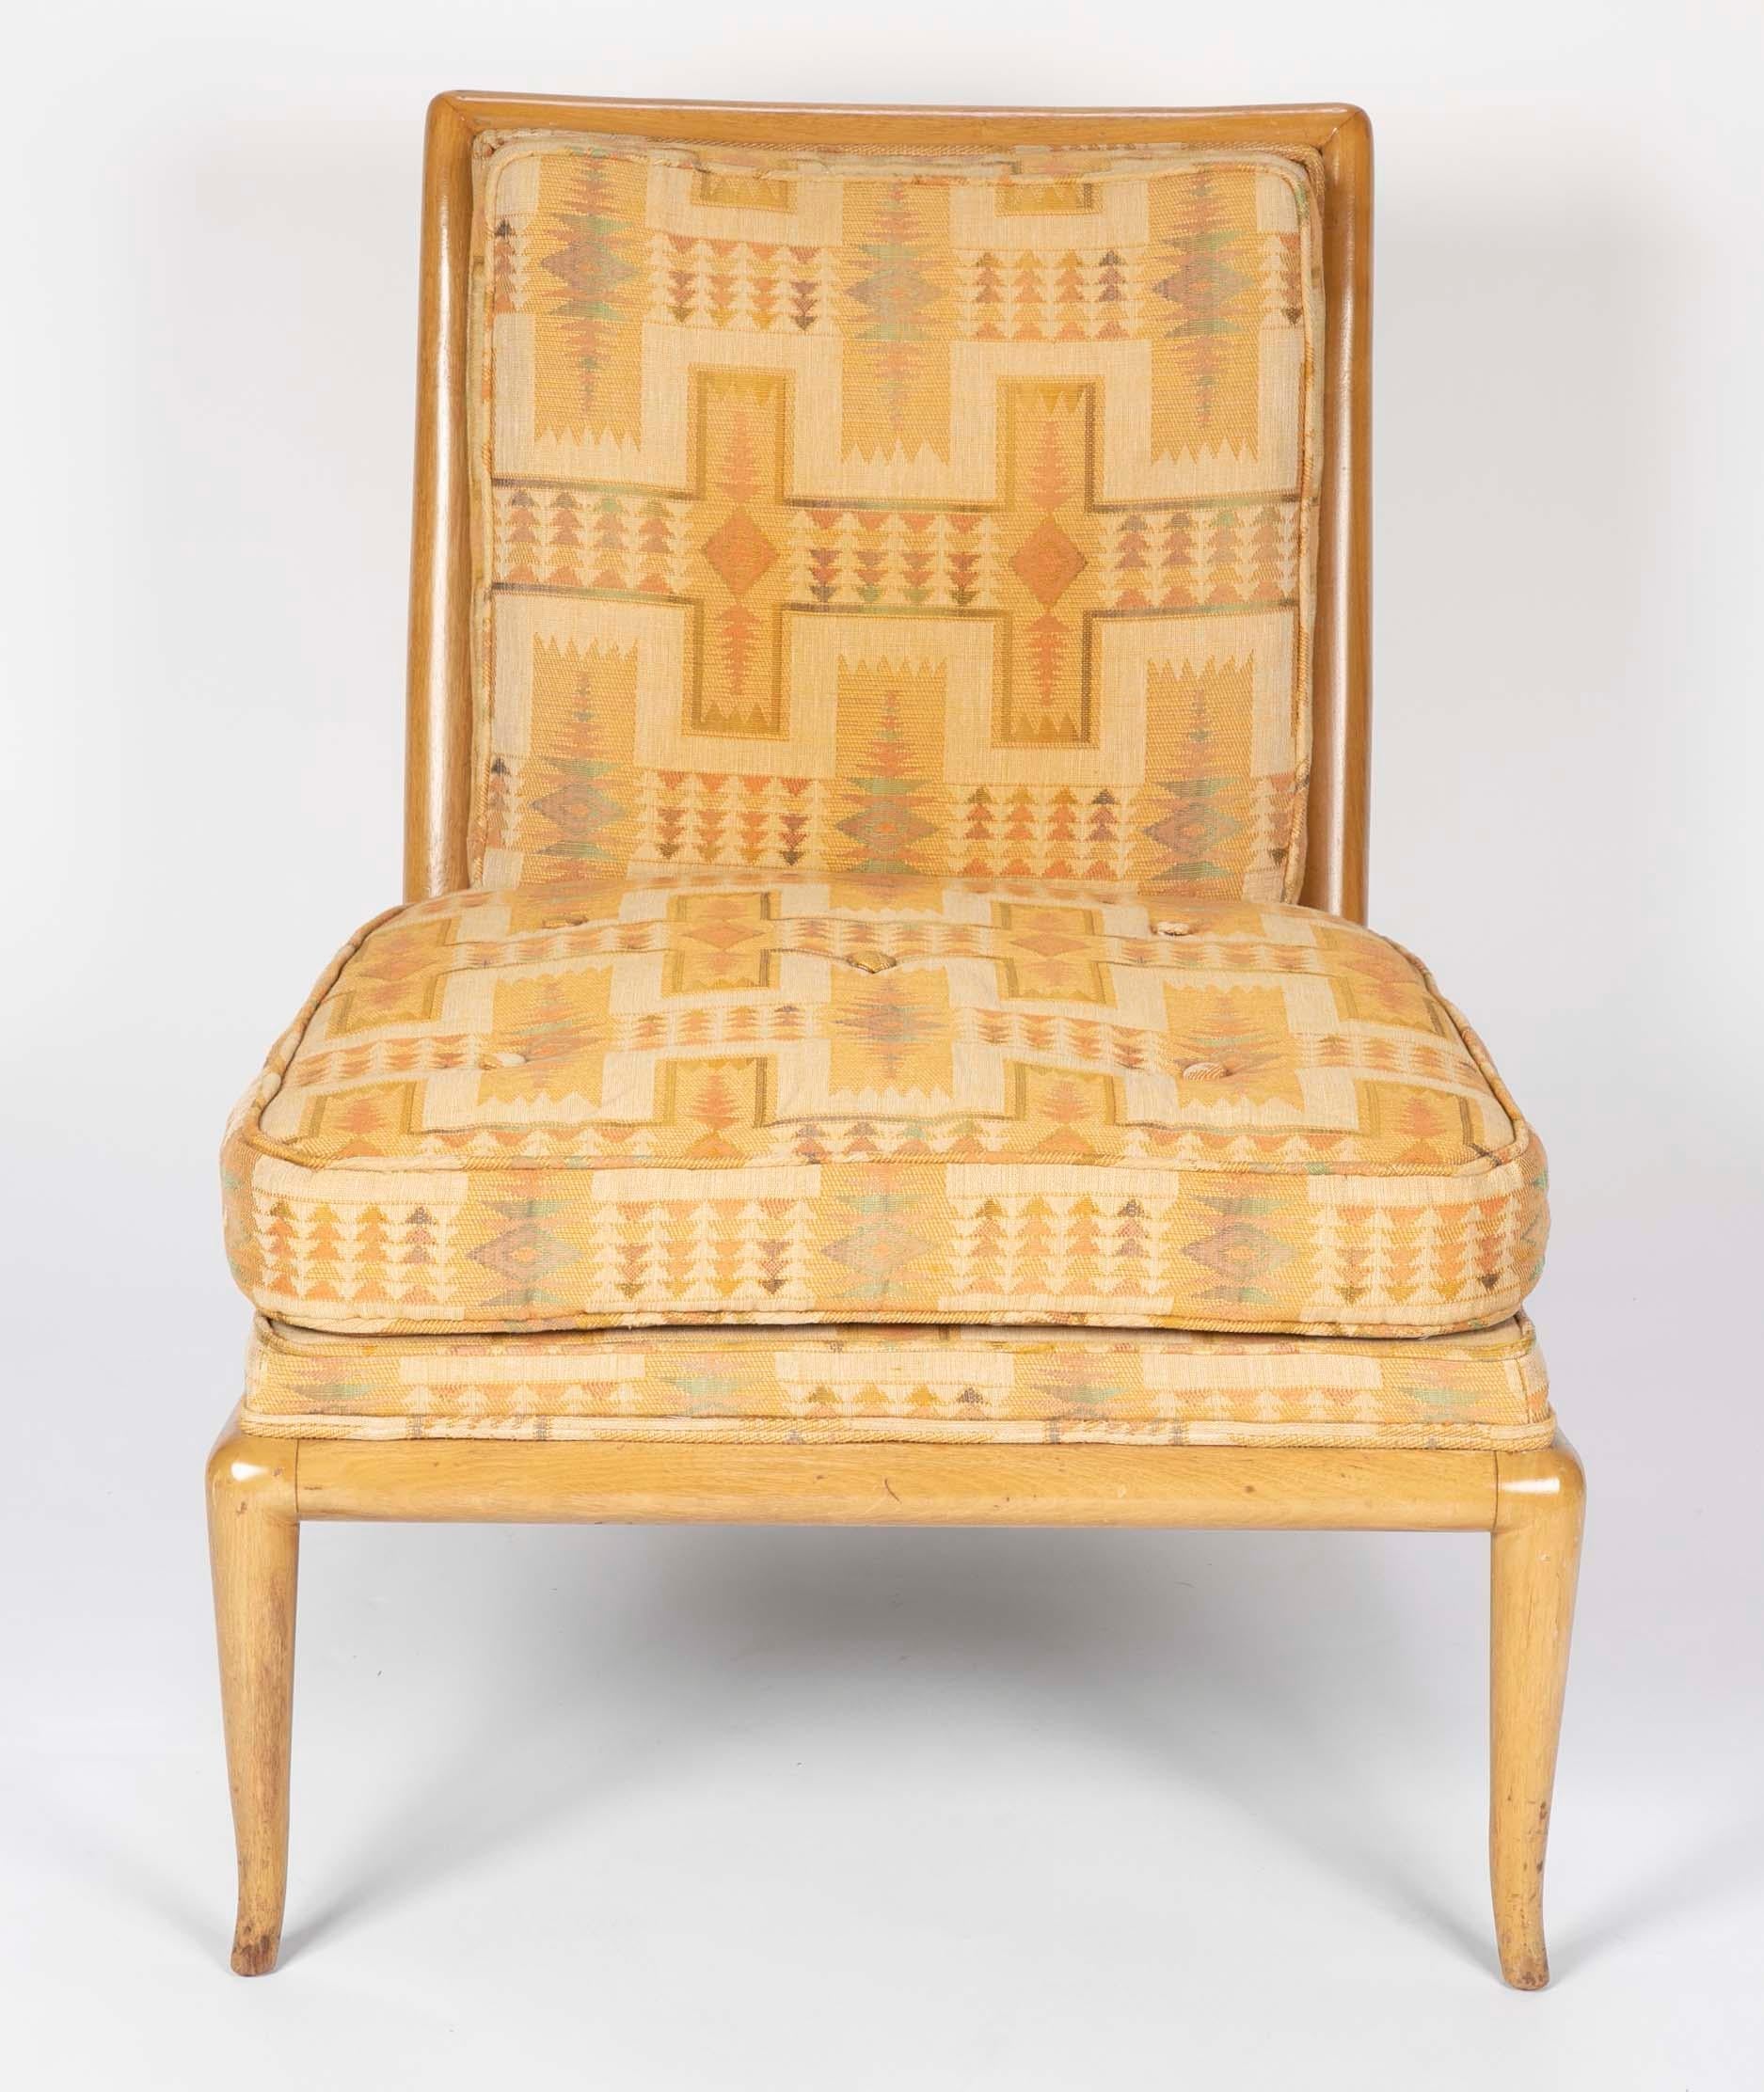 Robsjohn-Gibbings for Widdicomb slipper chair, midcentury.

Measures: Seat height 17